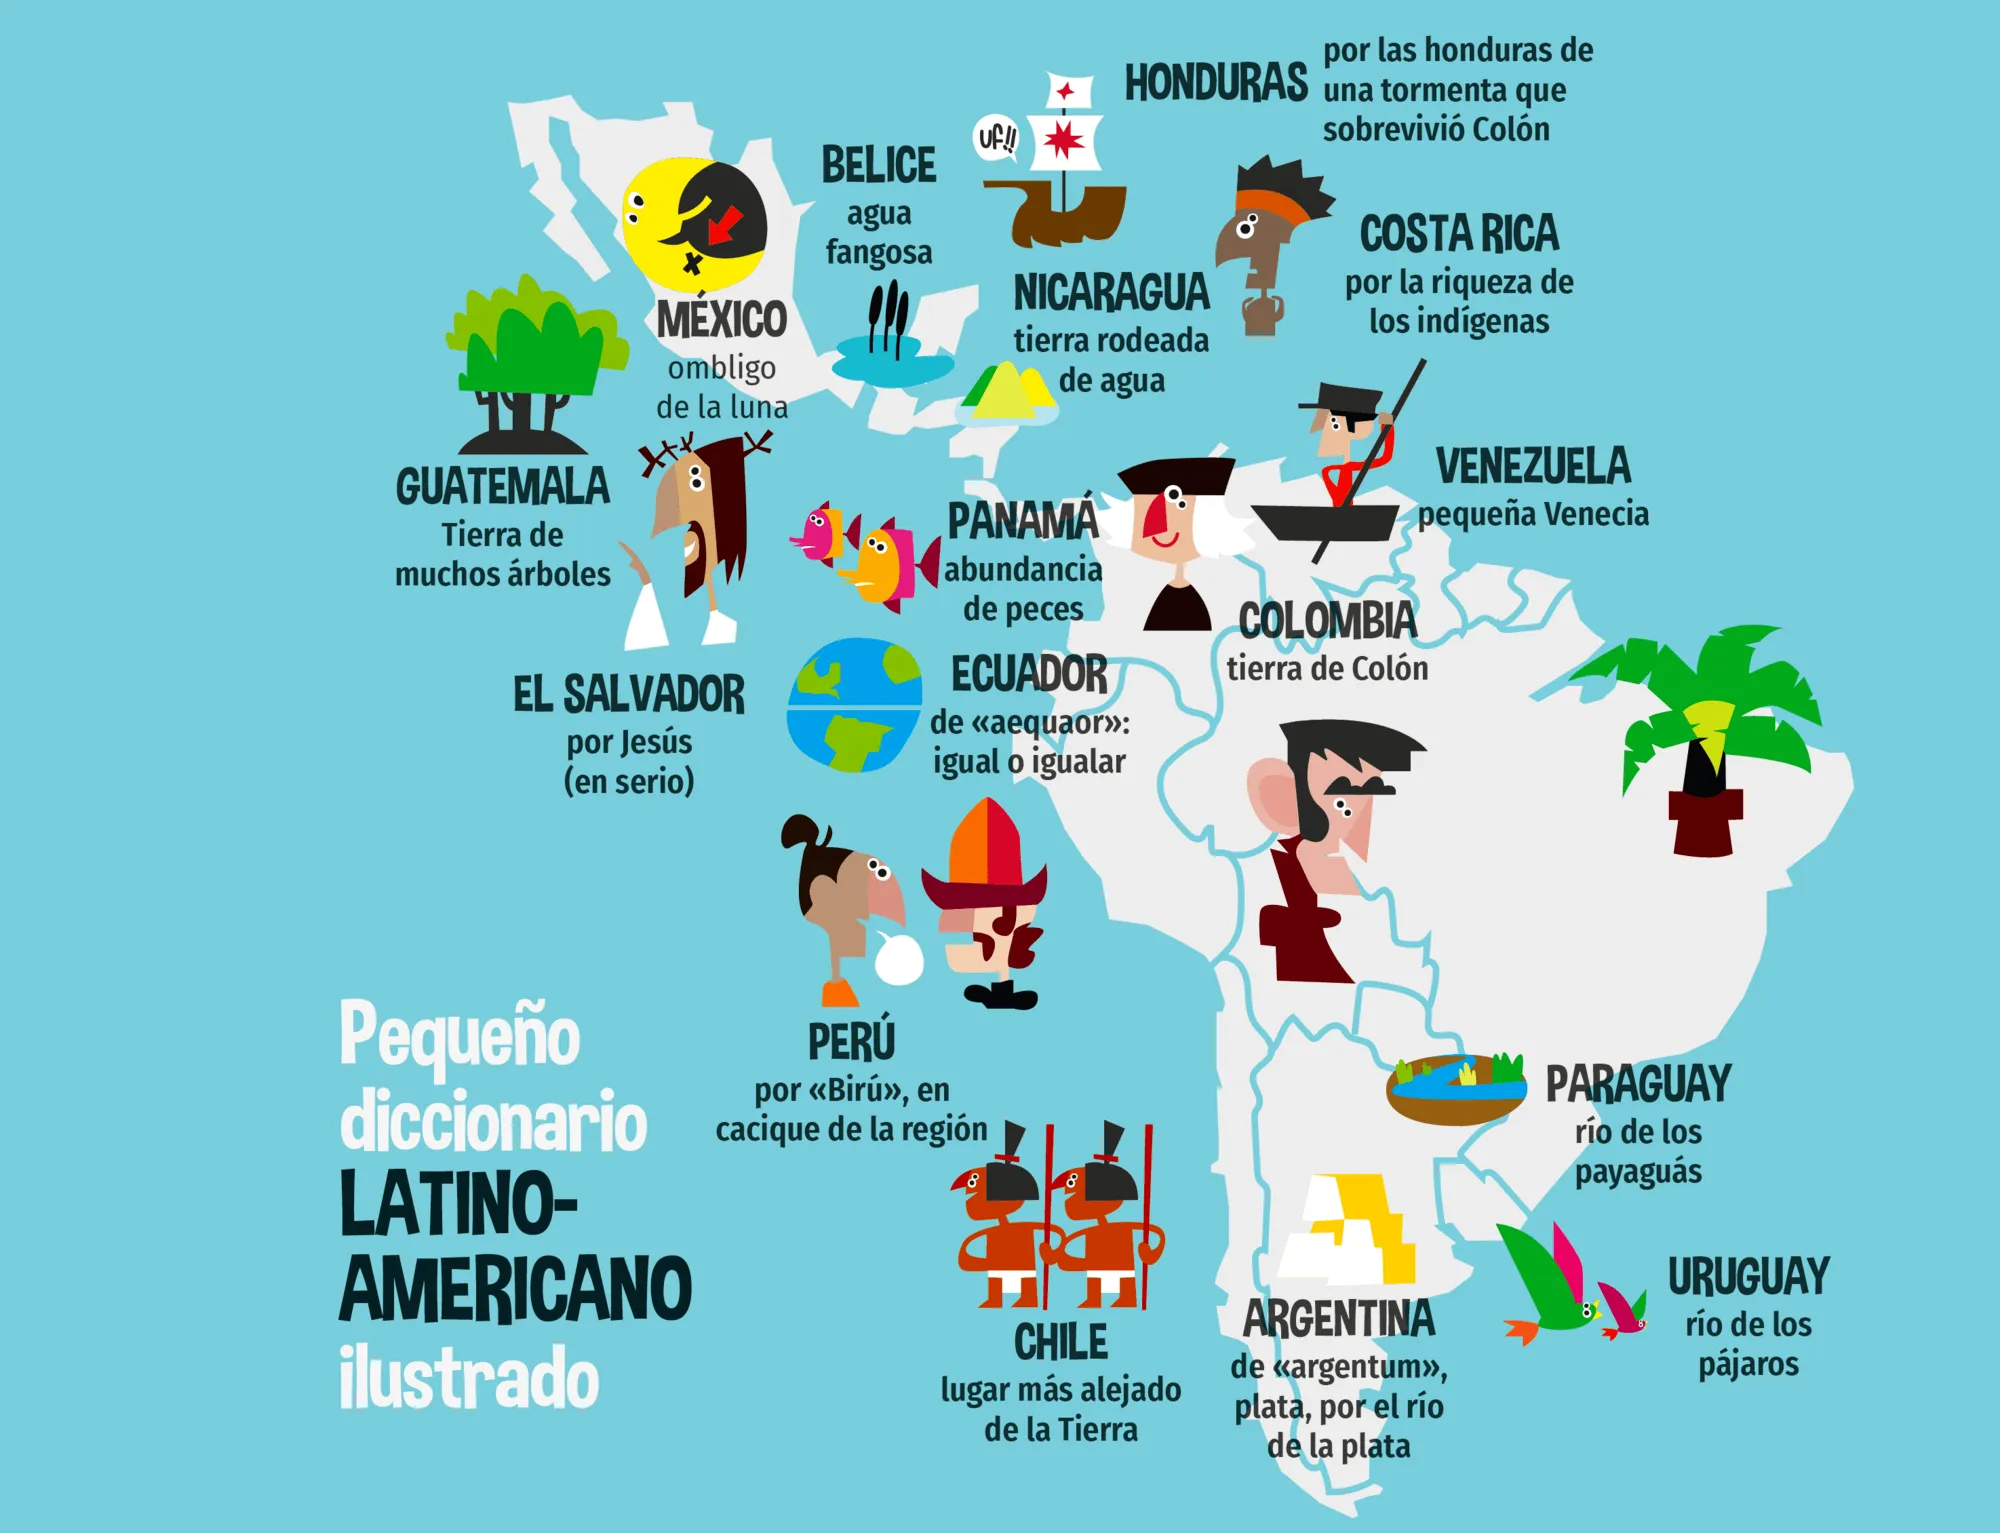 Pequeño diccionario latinoamericano ilustrado